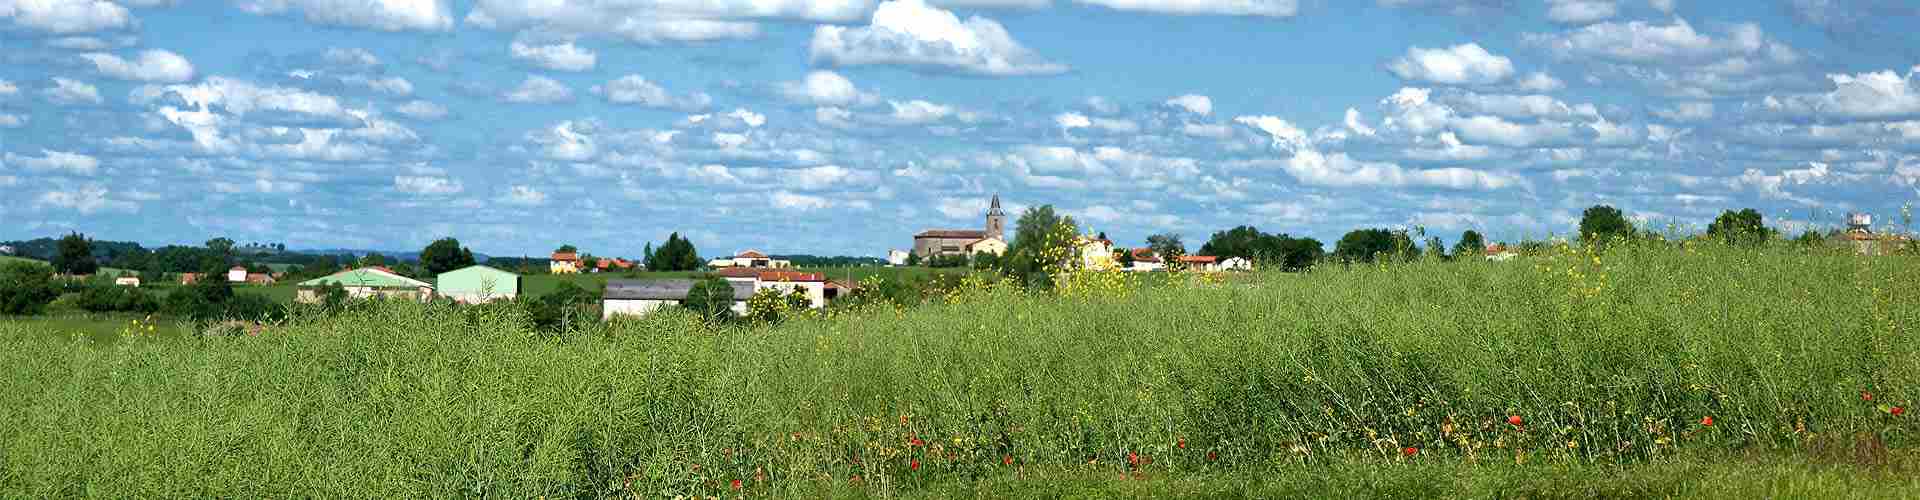 Casas rurales en Garrafe de Torío
           
           


          
          
          
